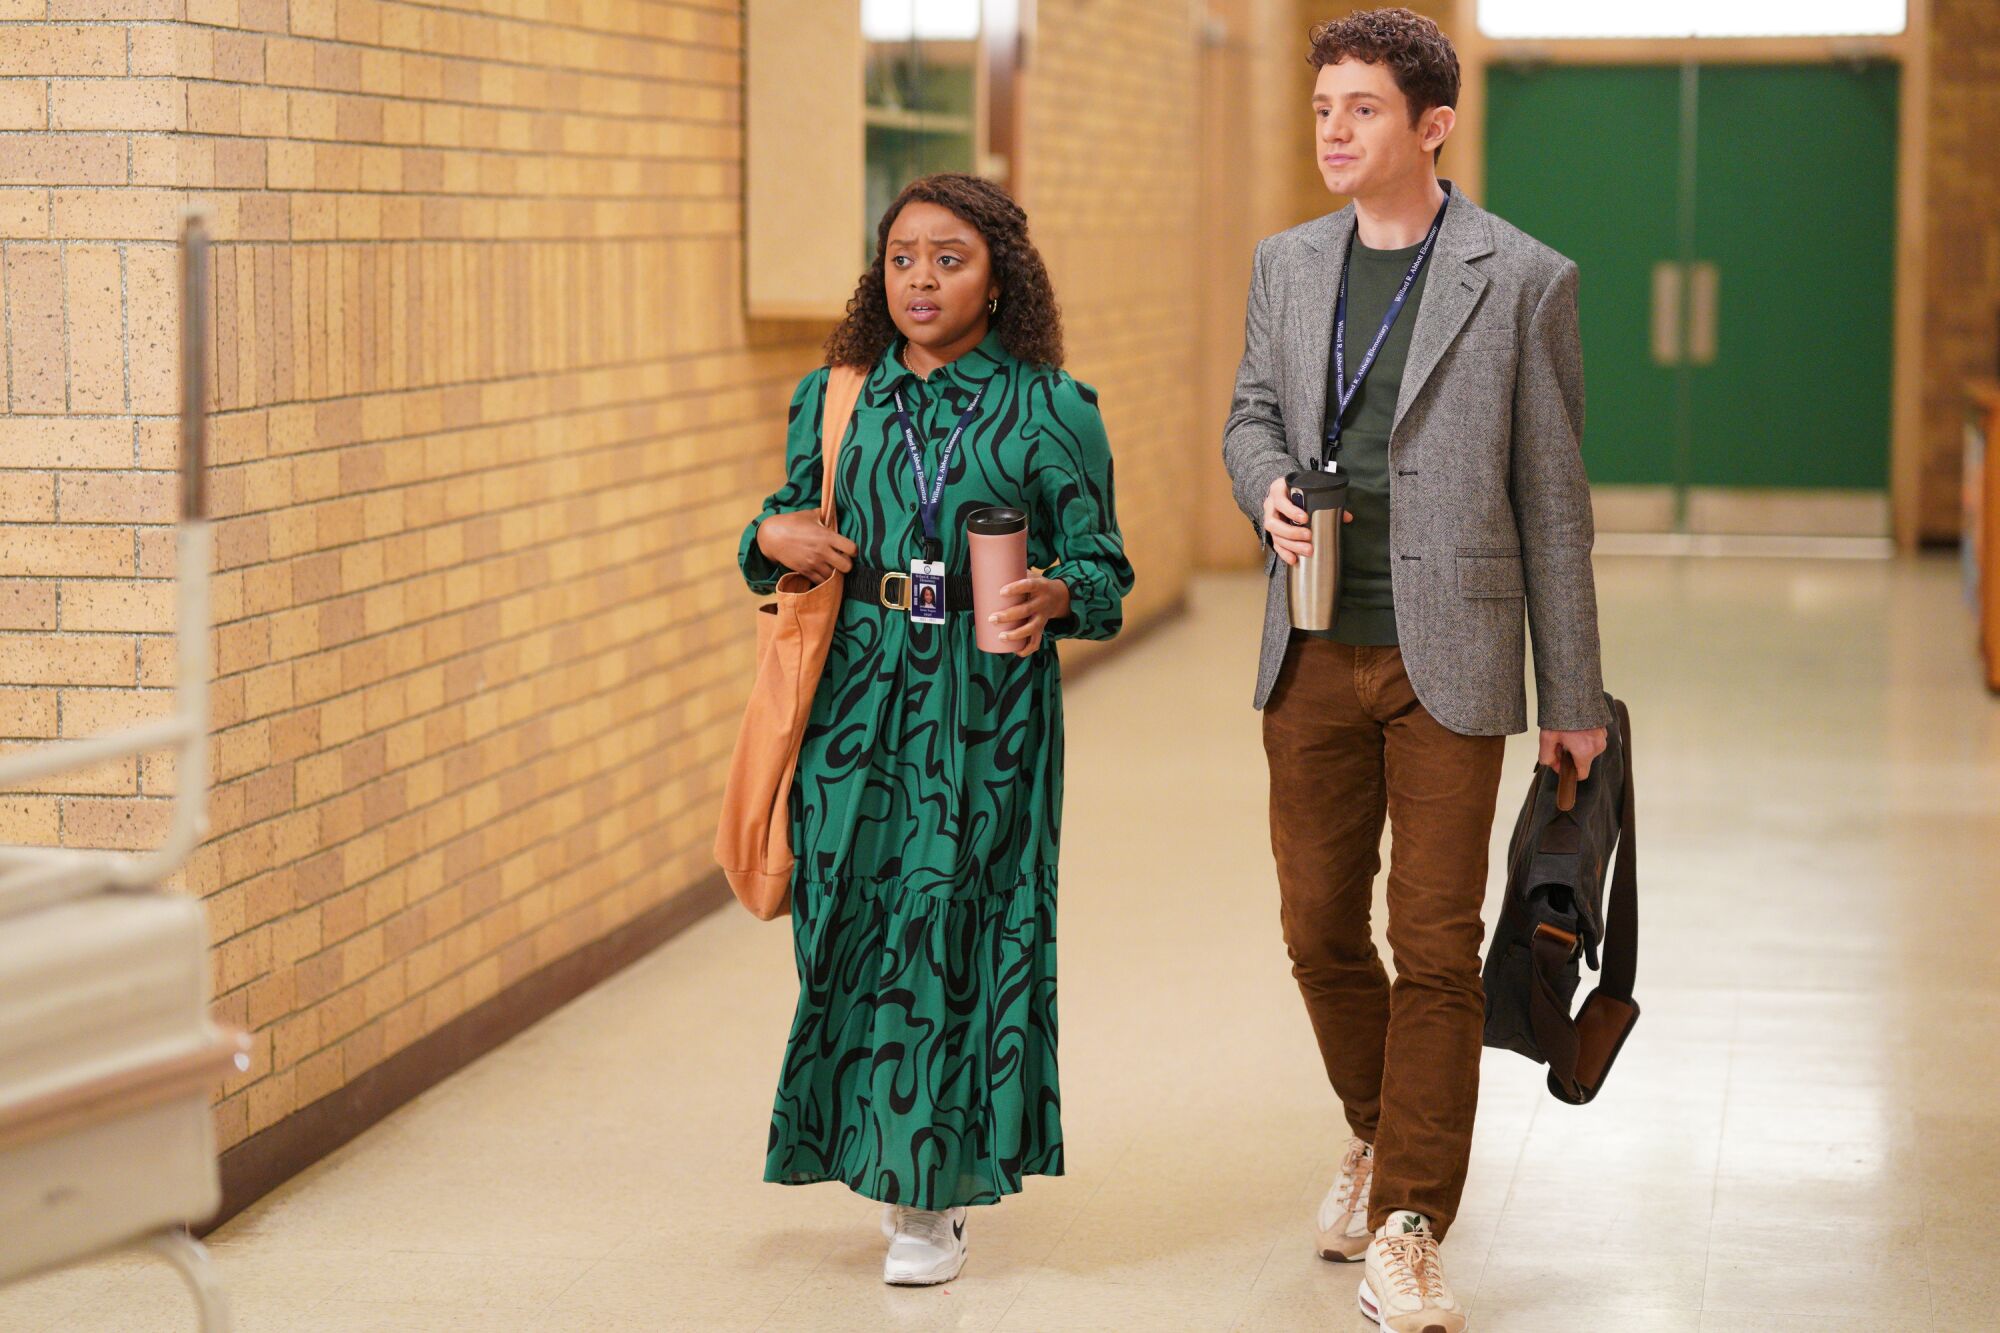 Two people walk down a school hallway in a scene from "Abbott Elementary."